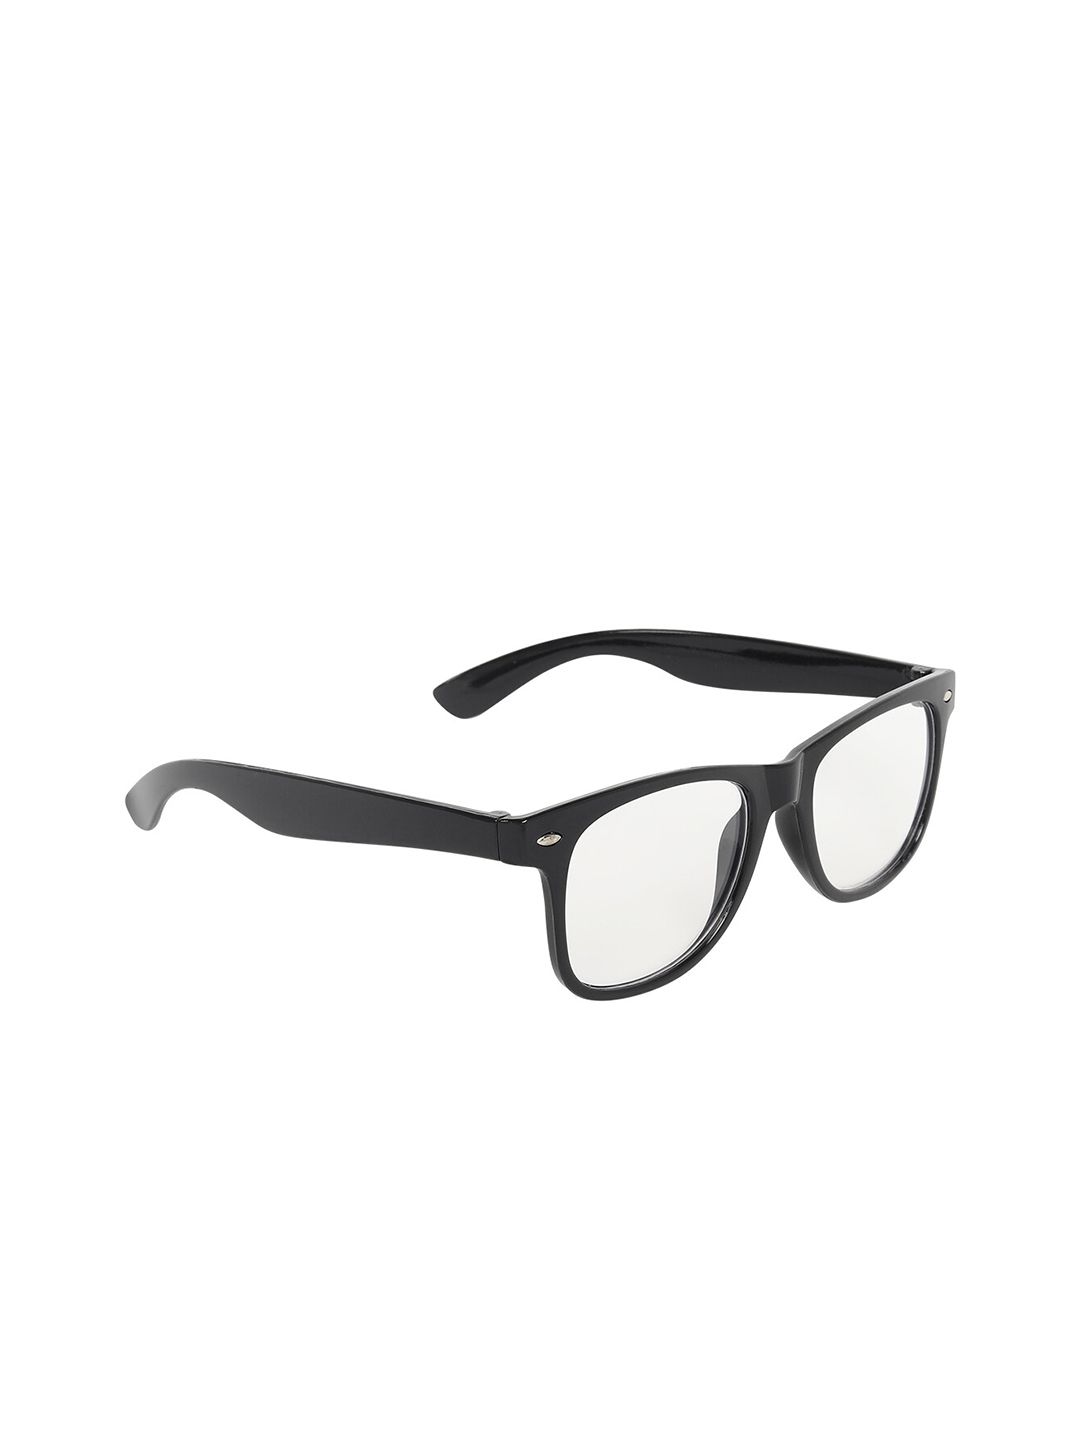 ALIGATORR Unisex Black Wayfarer Sunglasses UV Protected Lens AGR_KC_WHITE Price in India